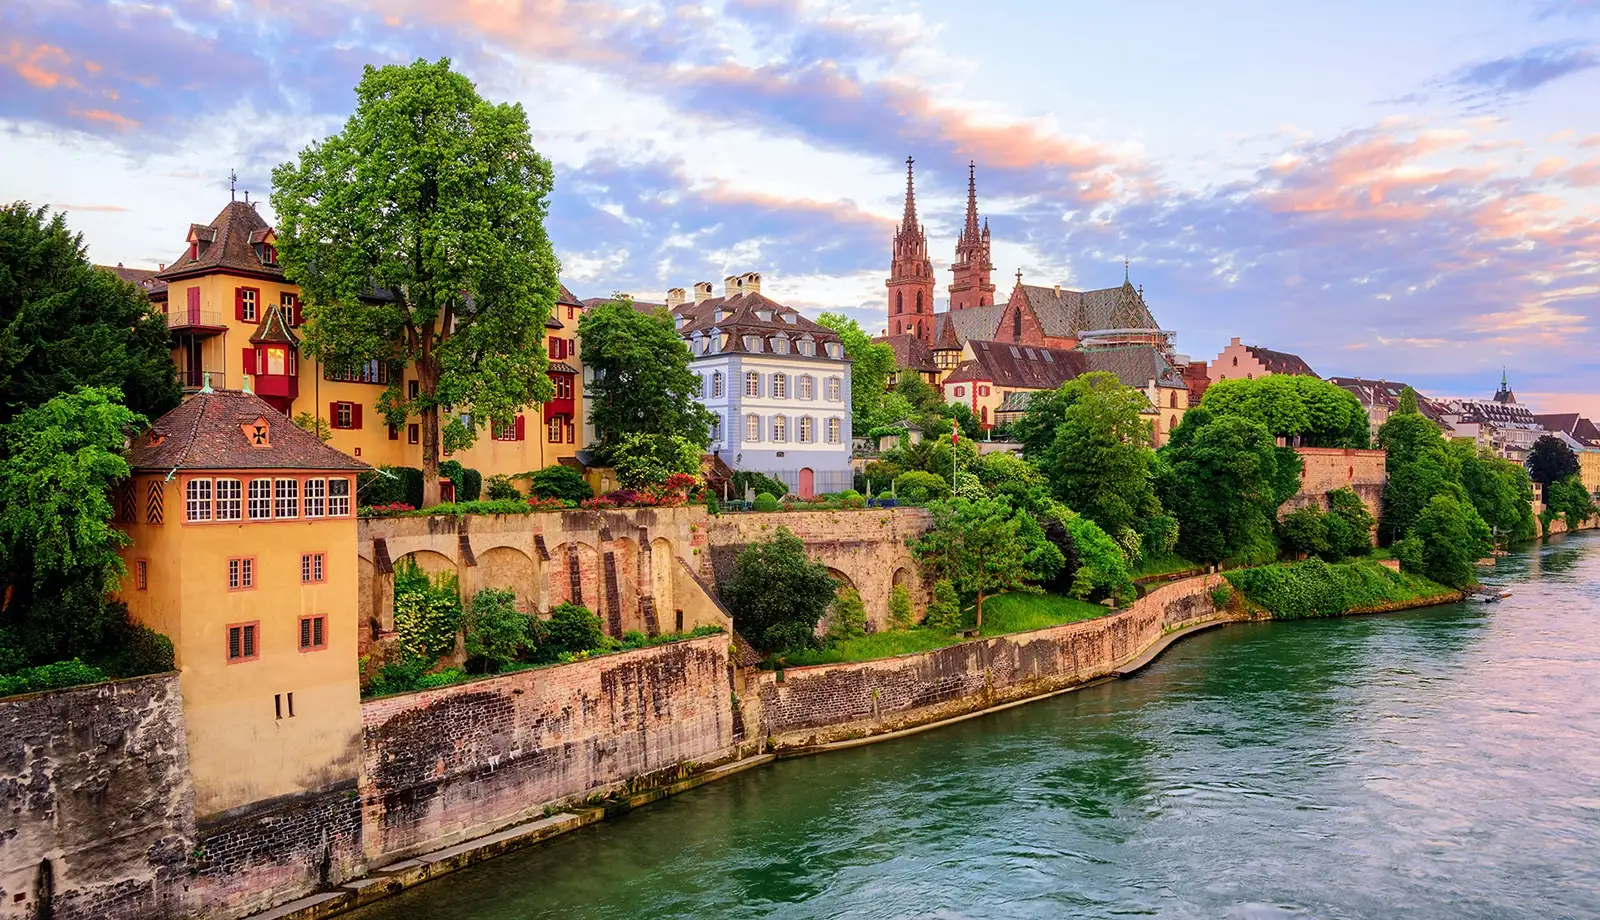 Basel có con sông huyền thoại Rhein tuyệt đẹp